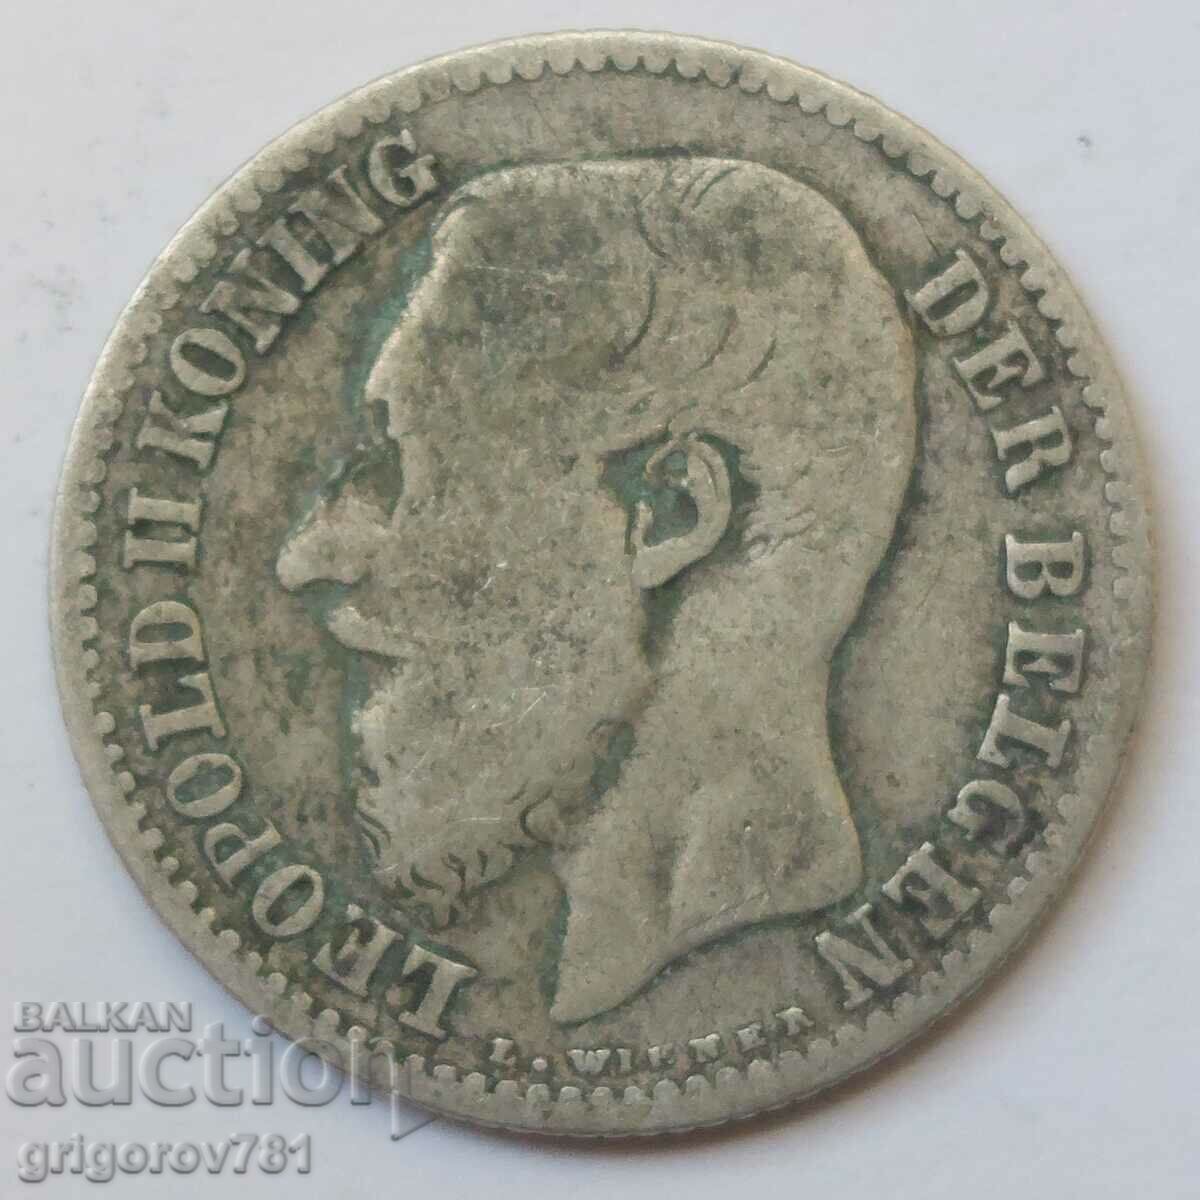 Ασημένιο 1 φράγκου Βέλγιο 1887 - ασημένιο νόμισμα #58